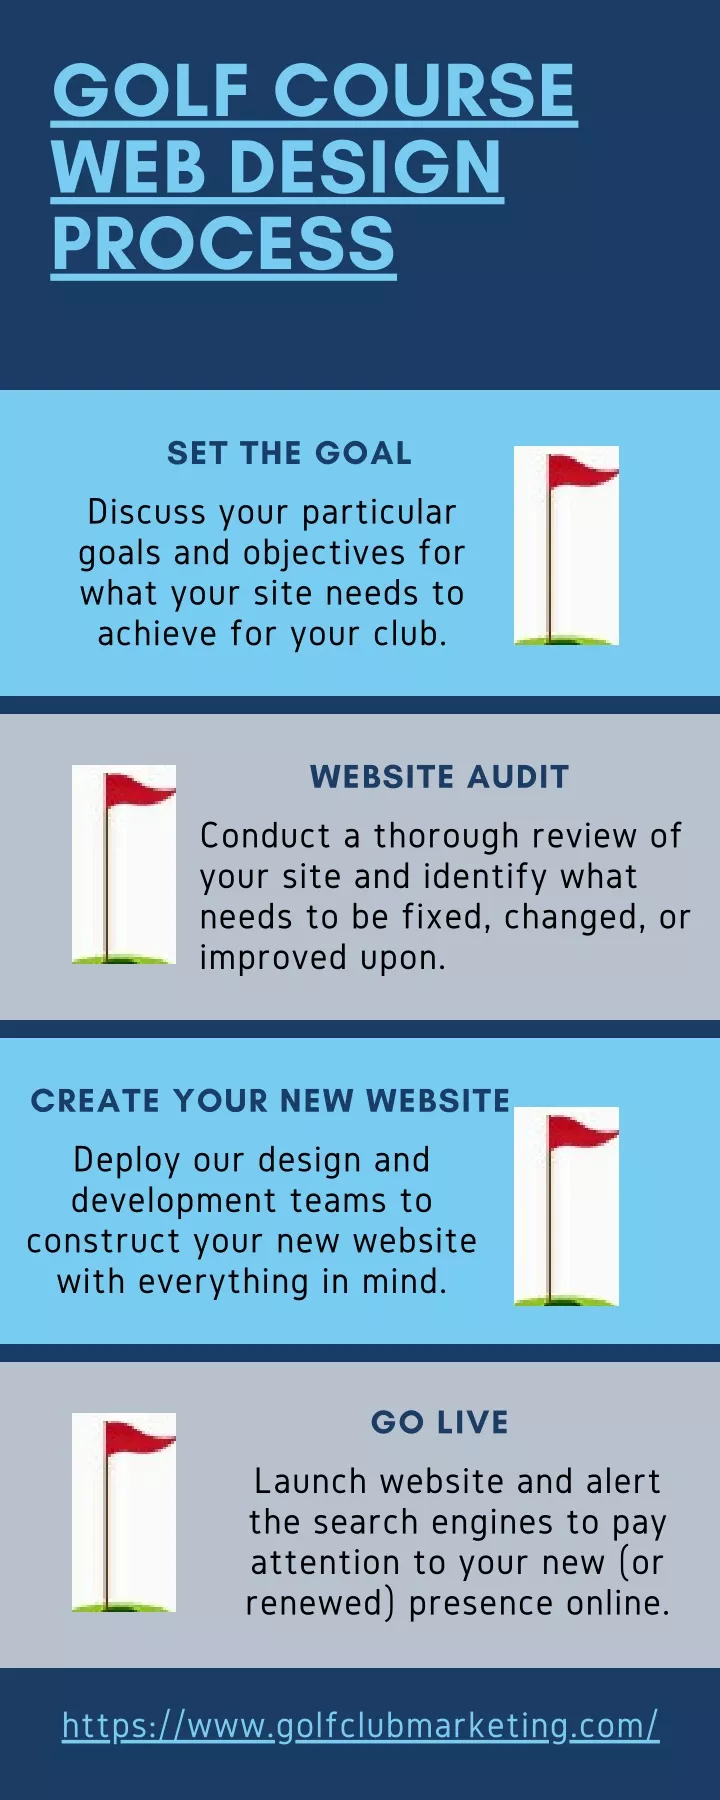 golf course web design process